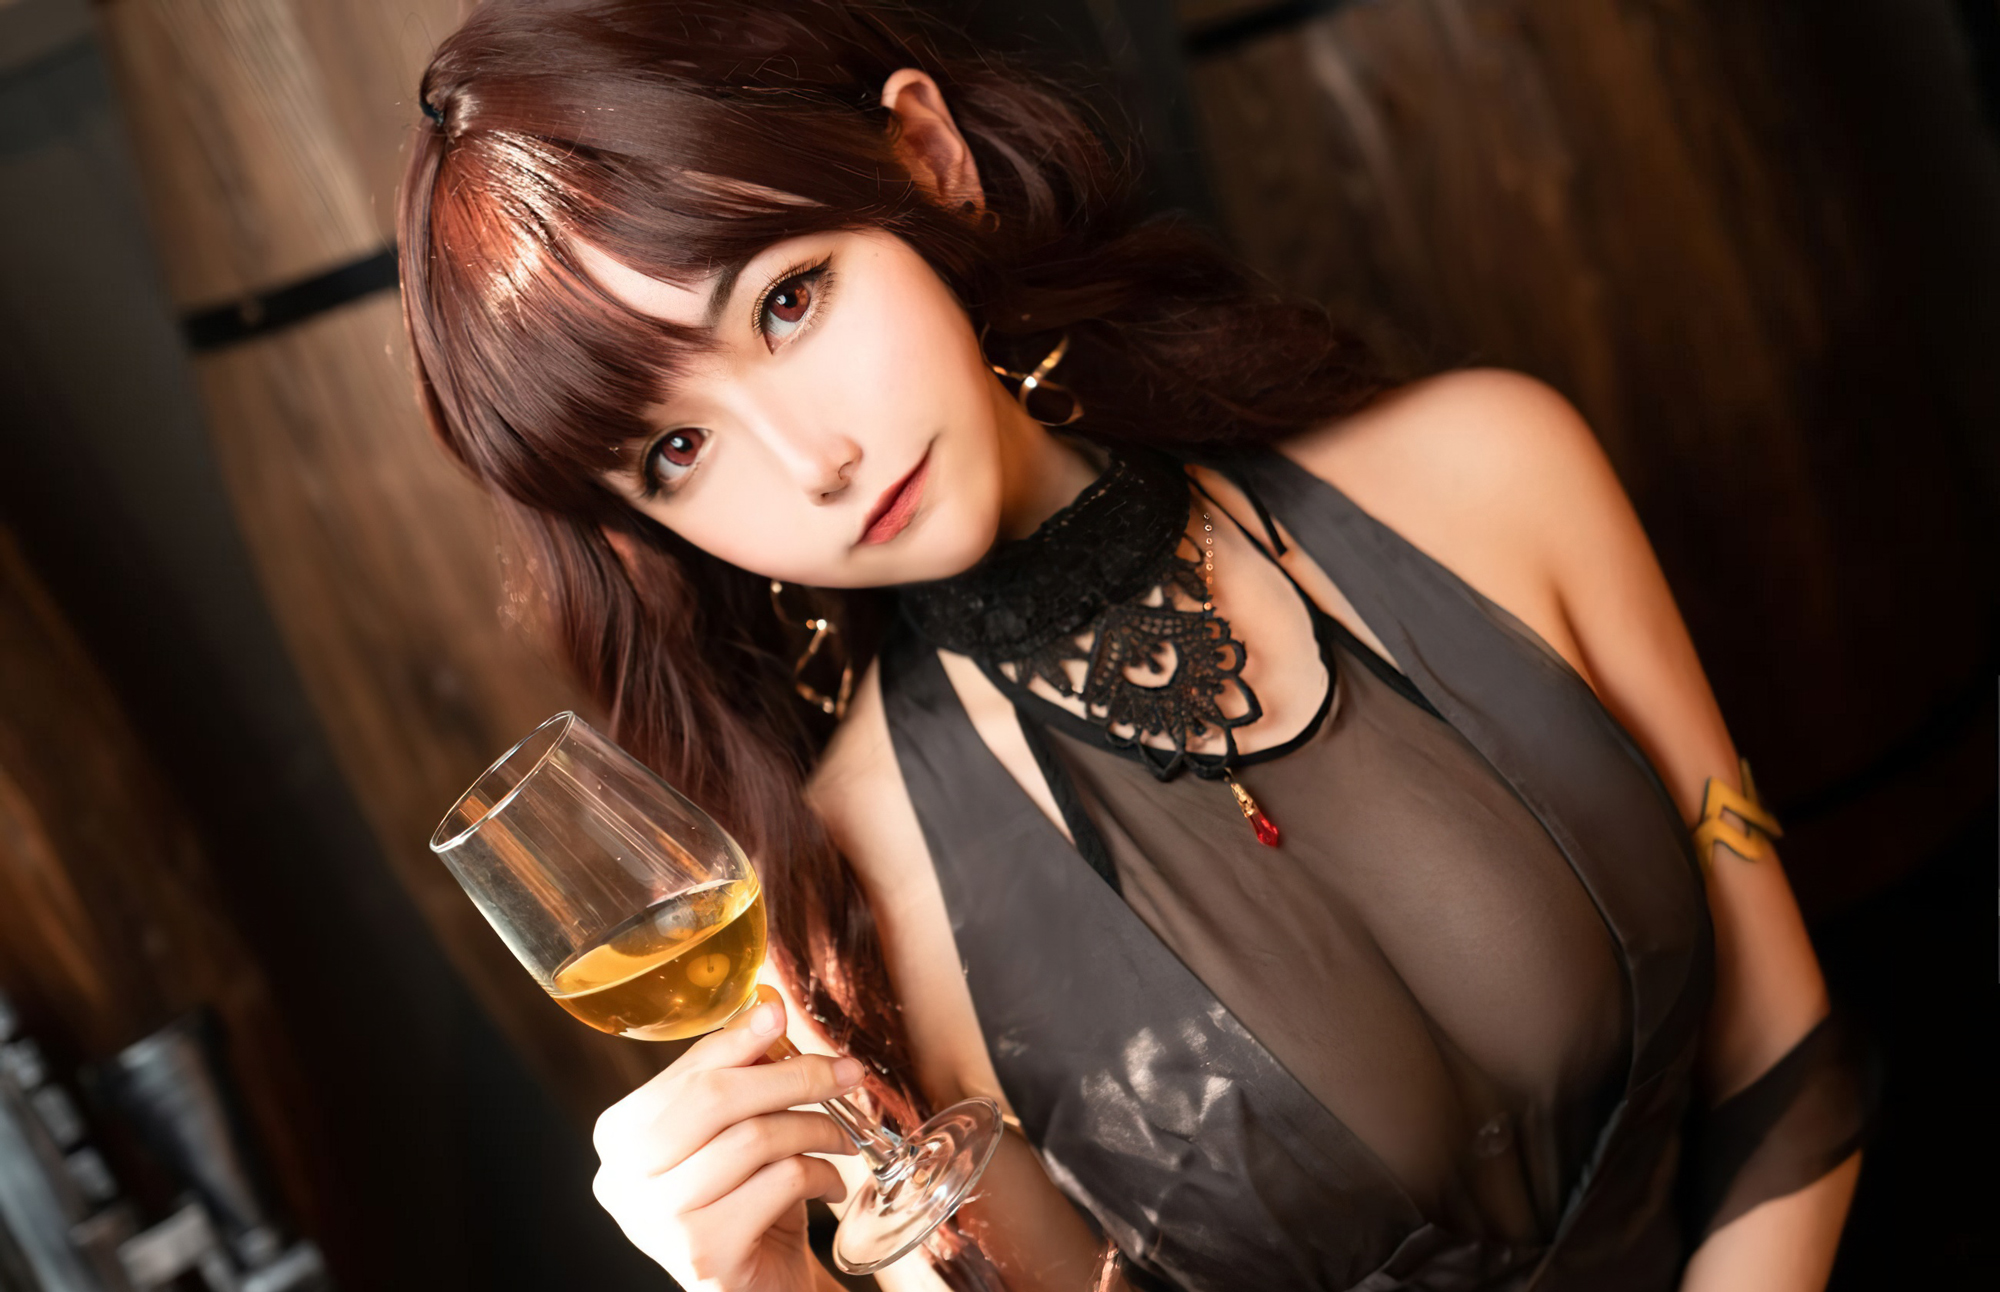 Momoko Aoi Women Model Asian Brunette Long Hair Black Dress 2000x1292